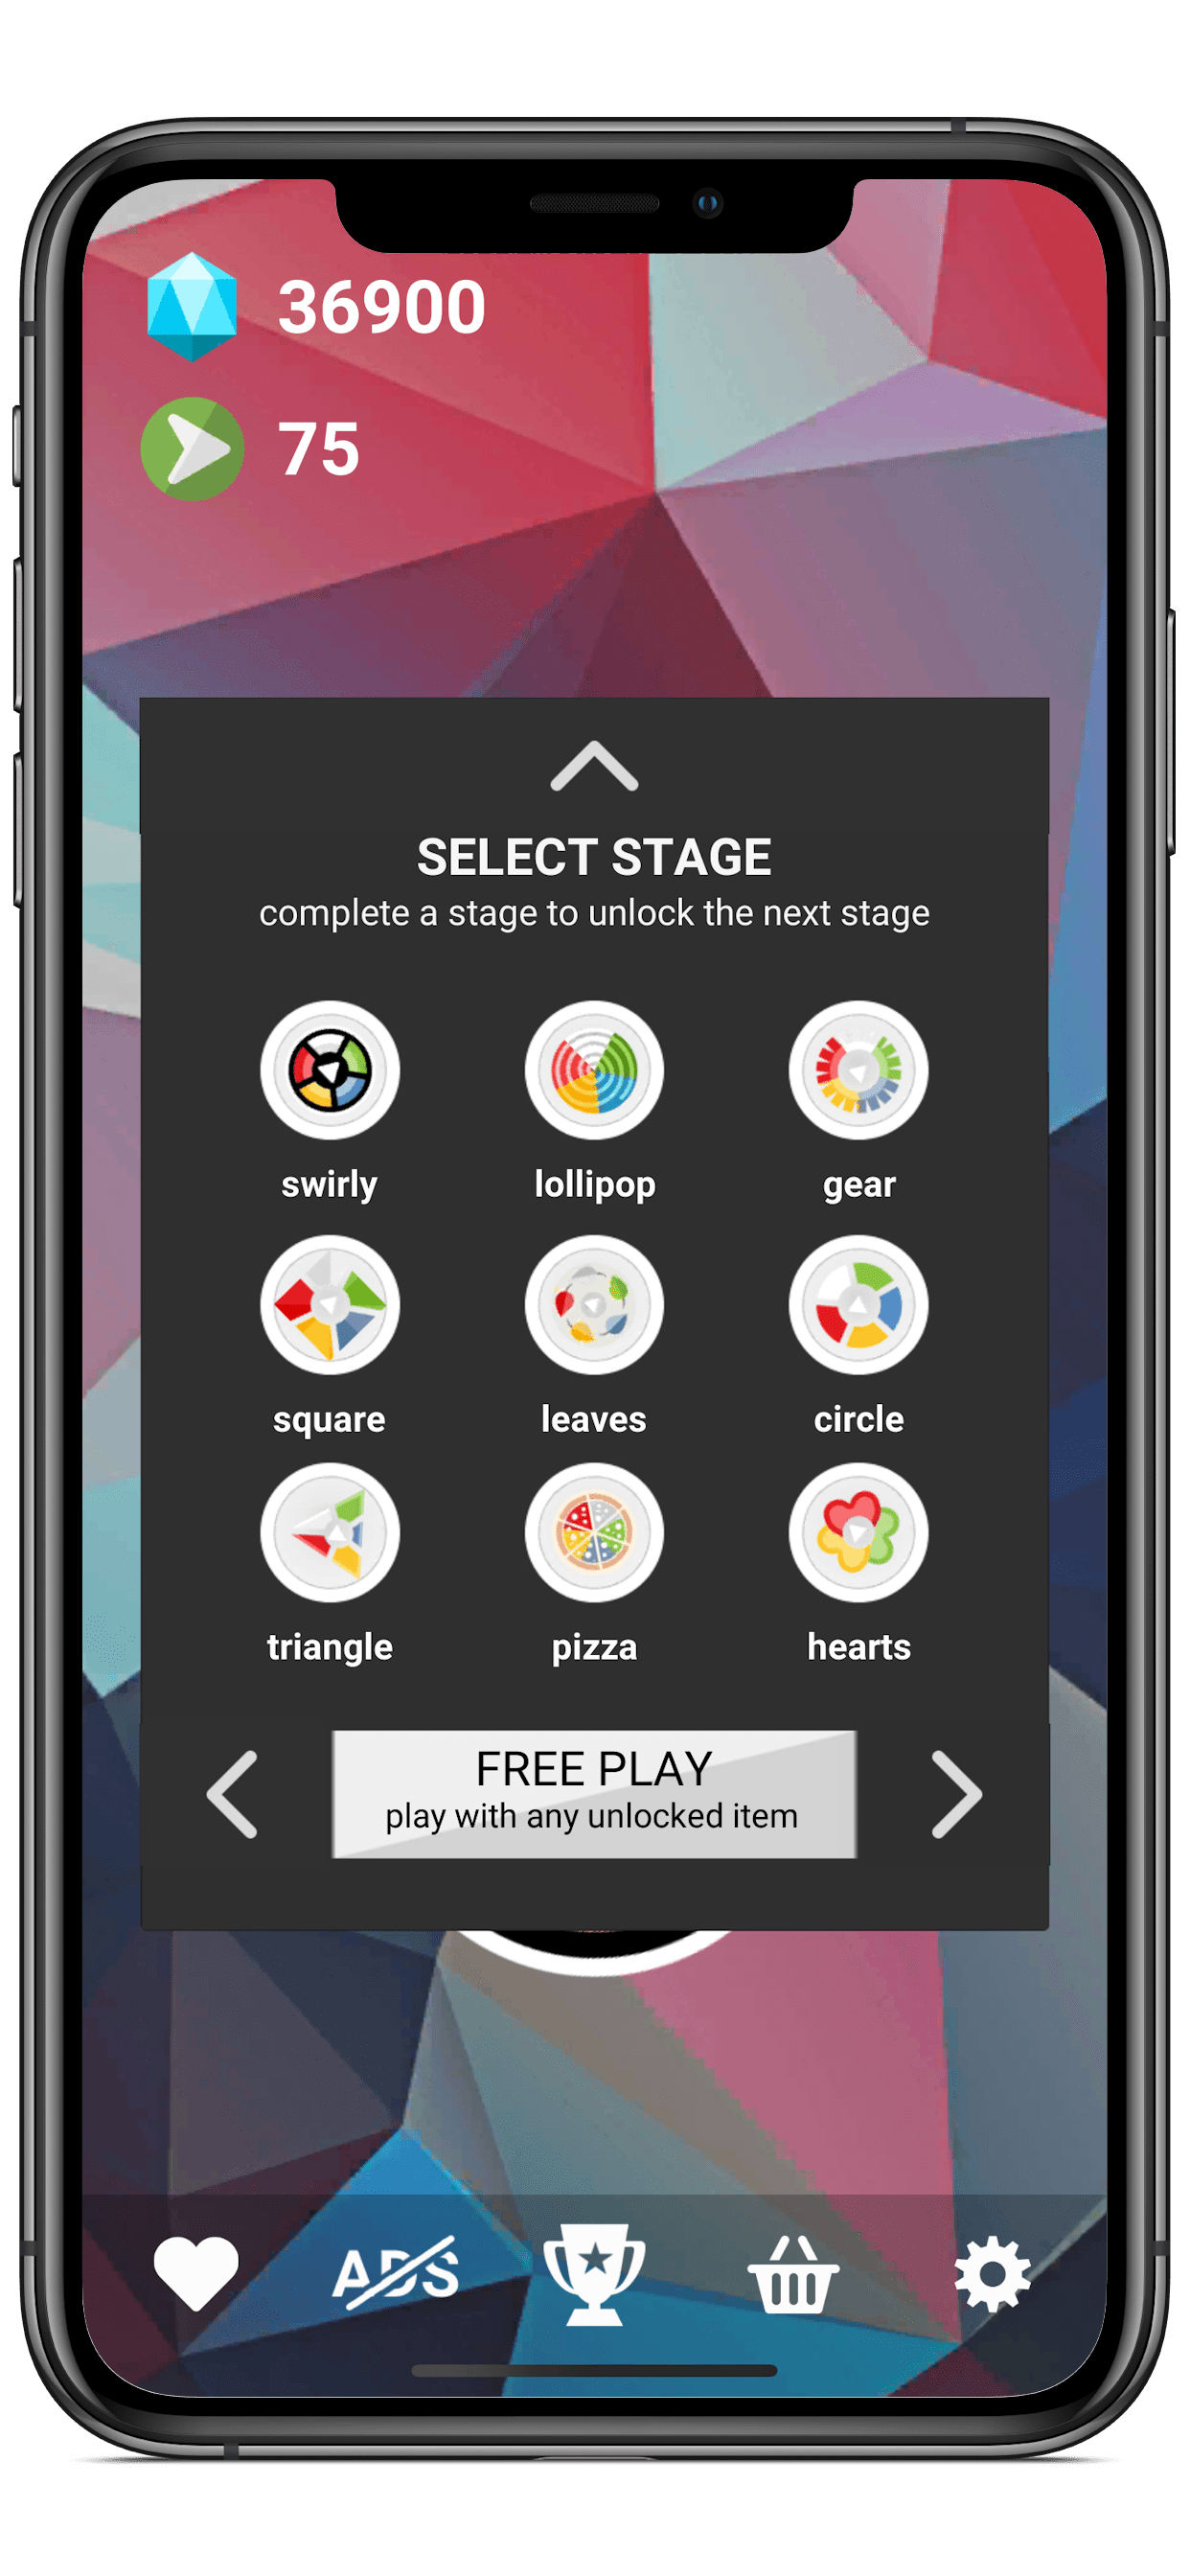 3 11 Darmowa gra SWIRLY dla Android, iOS, Windows i na urządzenia mobilne - kolory i kształty, brak przemocy